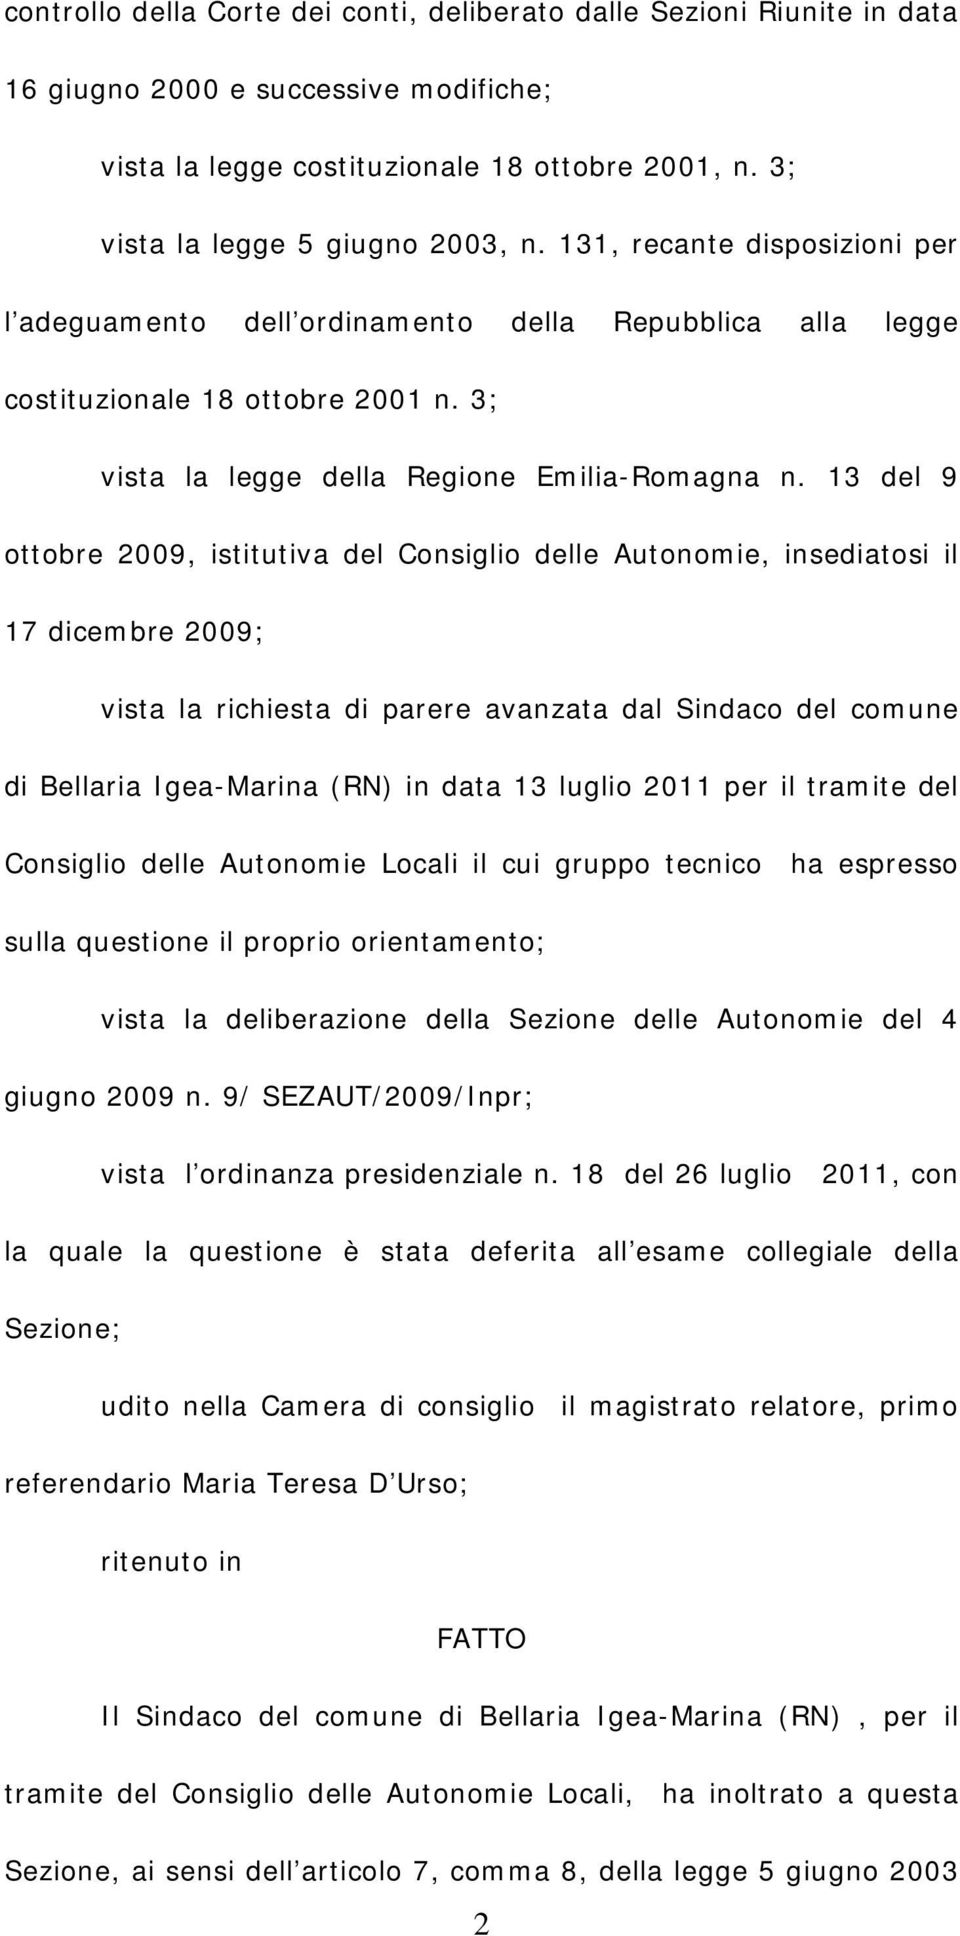 13 del 9 ottobre 2009, istitutiva del Consiglio delle Autonomie, insediatosi il 17 dicembre 2009; vista la richiesta di parere avanzata dal Sindaco del comune di Bellaria Igea-Marina (RN) in data 13